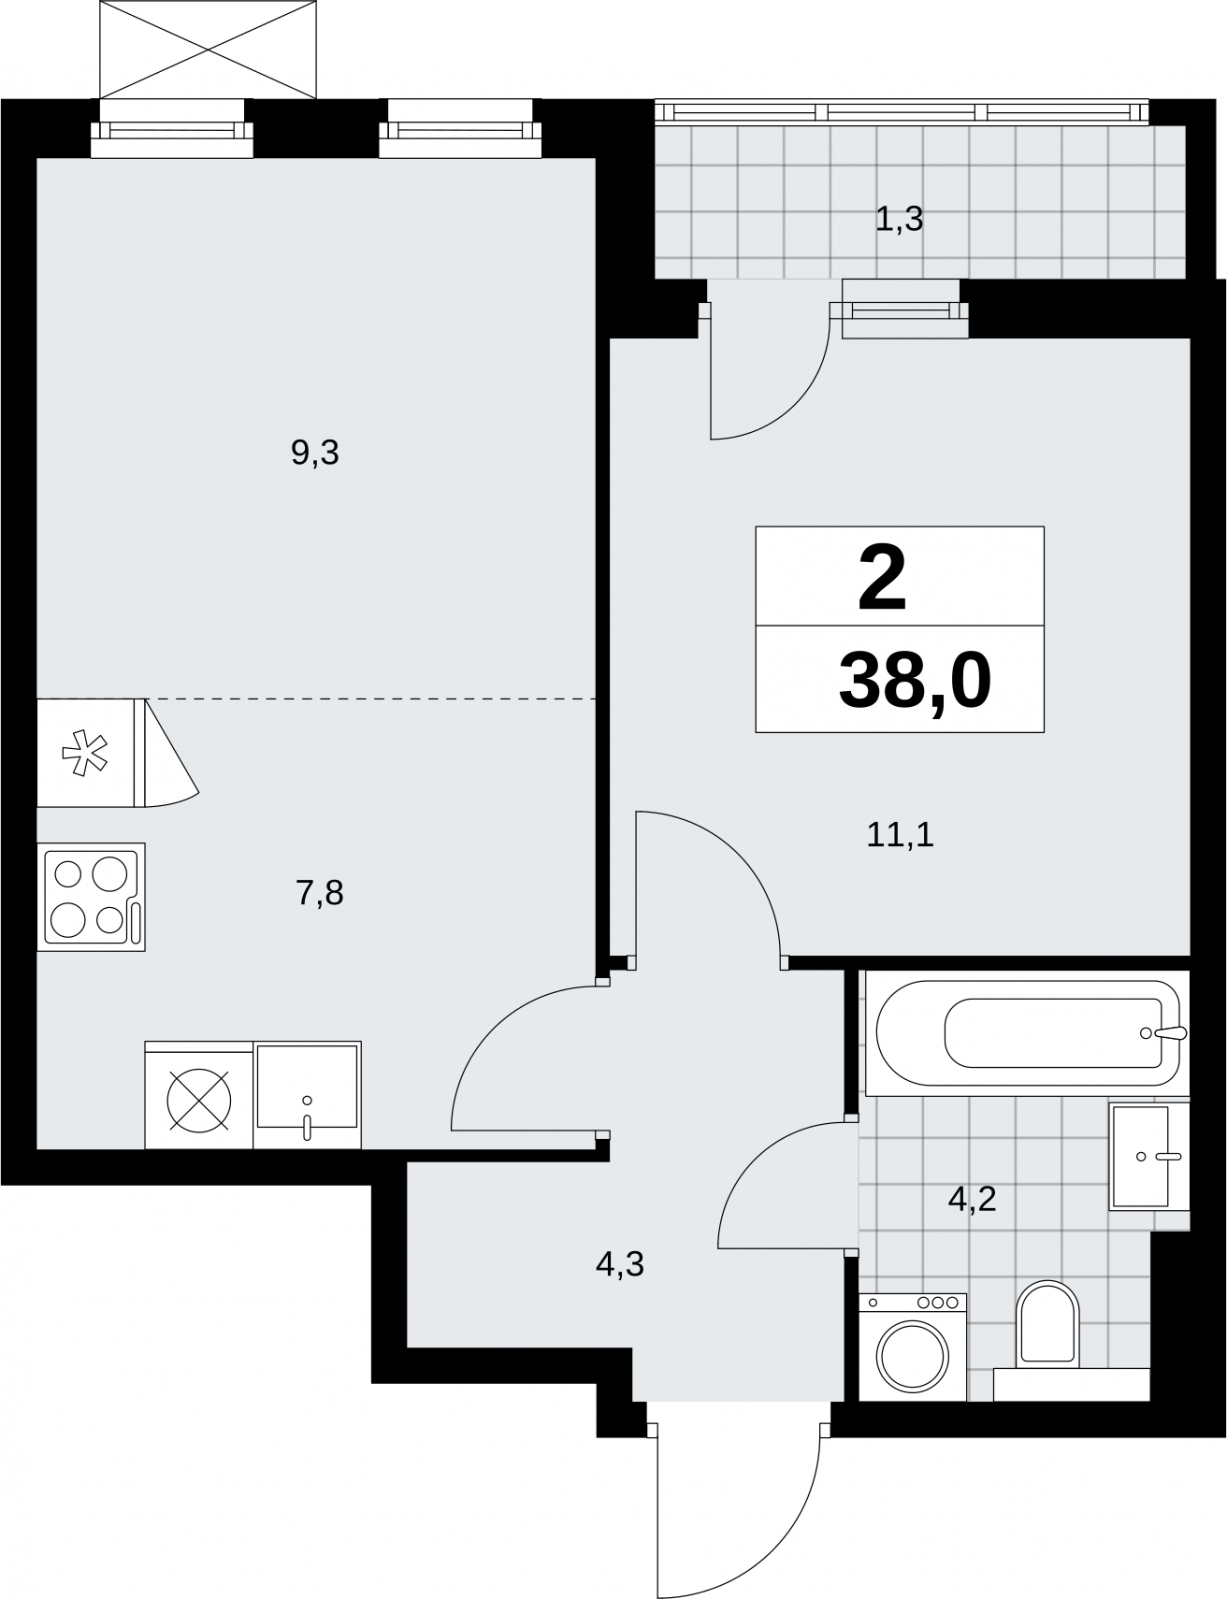 Продается двухкомнатная квартира в новом ЖК, у метро